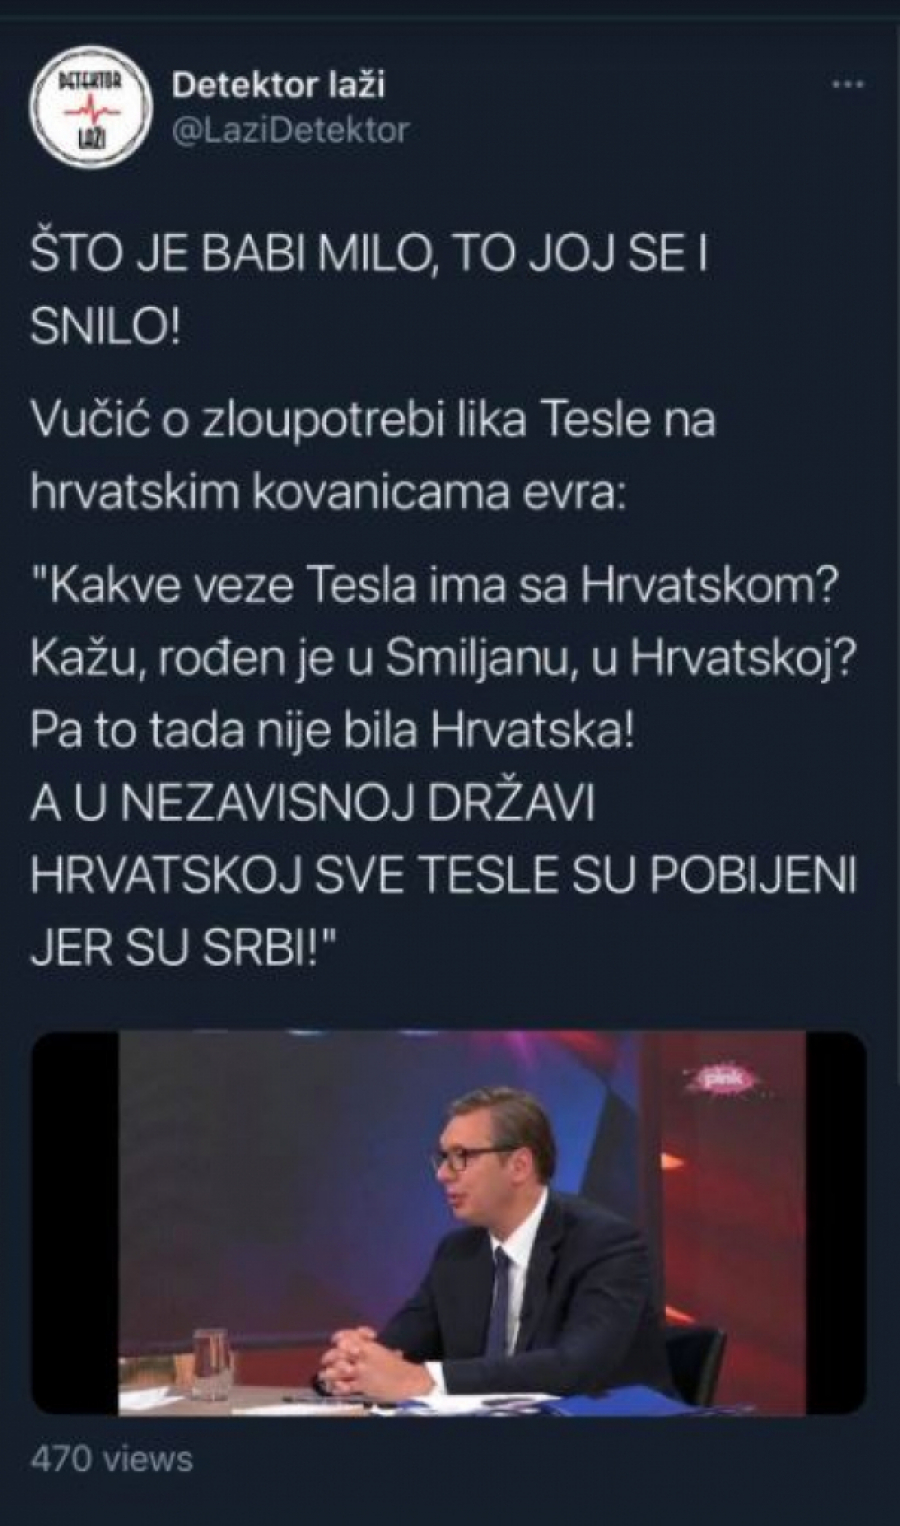 VUČIĆ NA METI USTAŠA, RAZOTKRIO SUŠTINU HRVATSKE A kakve veze ima Tesla sa Hrvatskom?! Je l' to ona Hrvatska u kojoj su mu ustaše poklale svu familiju zato što su bili Srbi?